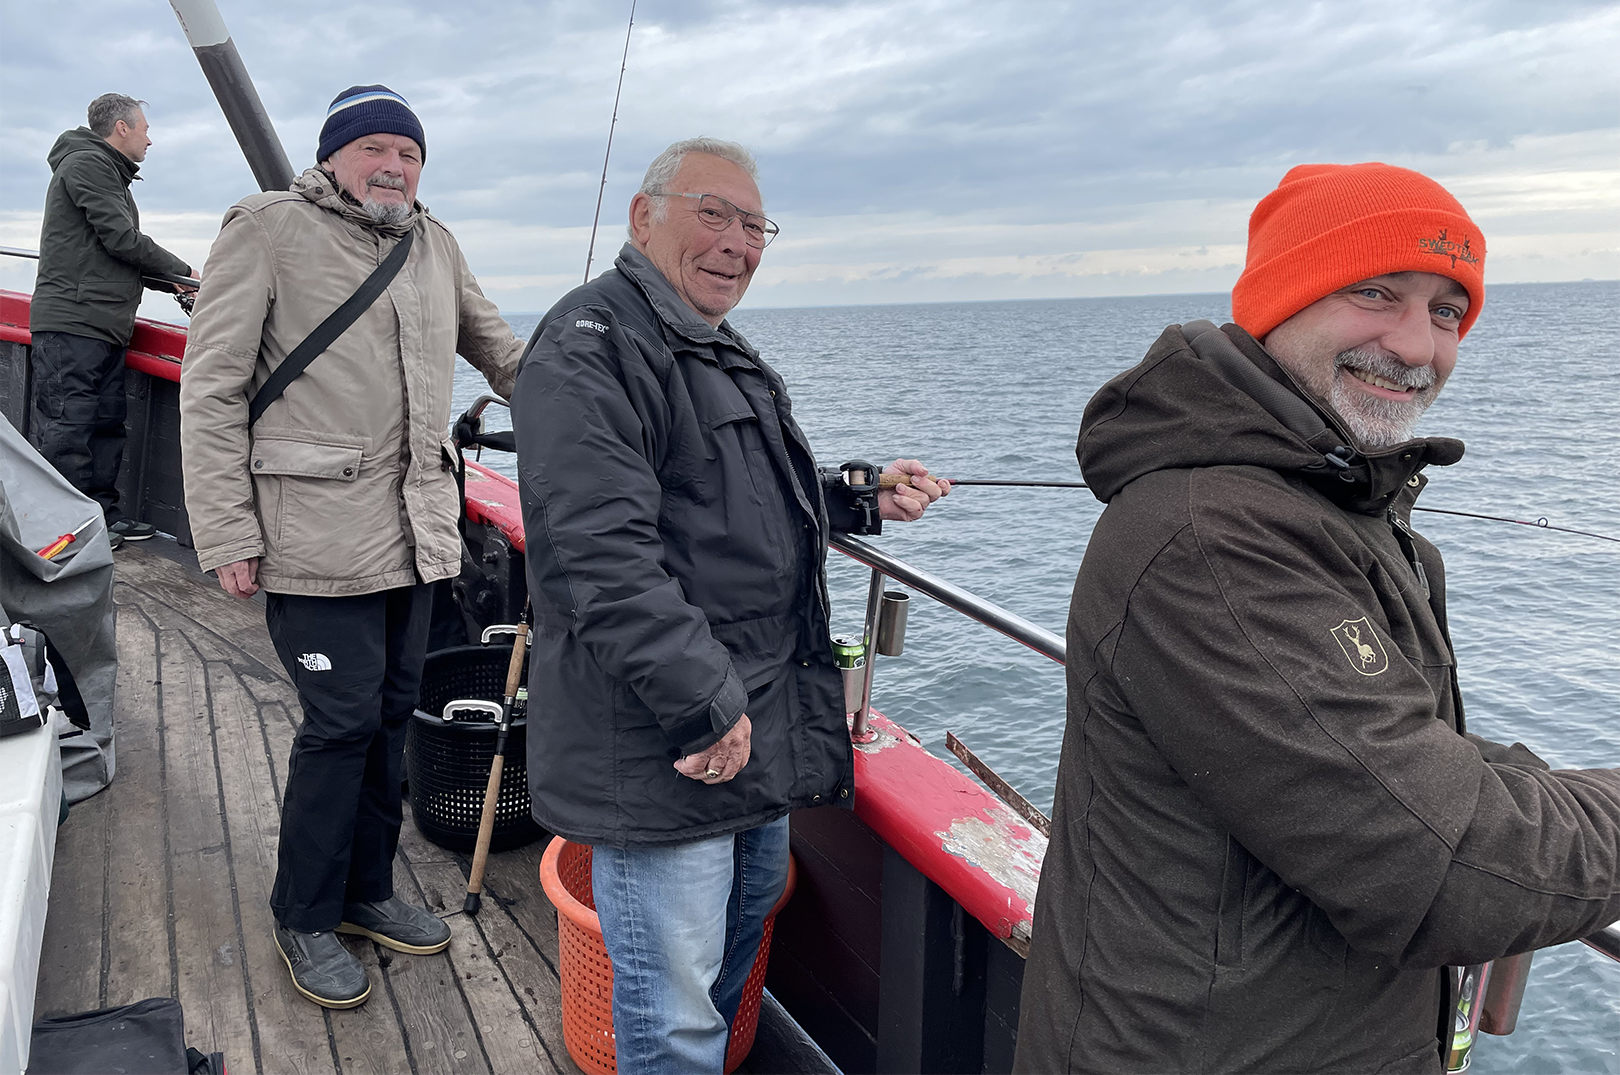 Her i dag er det havnearbejderne fra Københavns Havn, der er ude med Fyrholm, og der er godt gang i fiskeriet efter torskene.